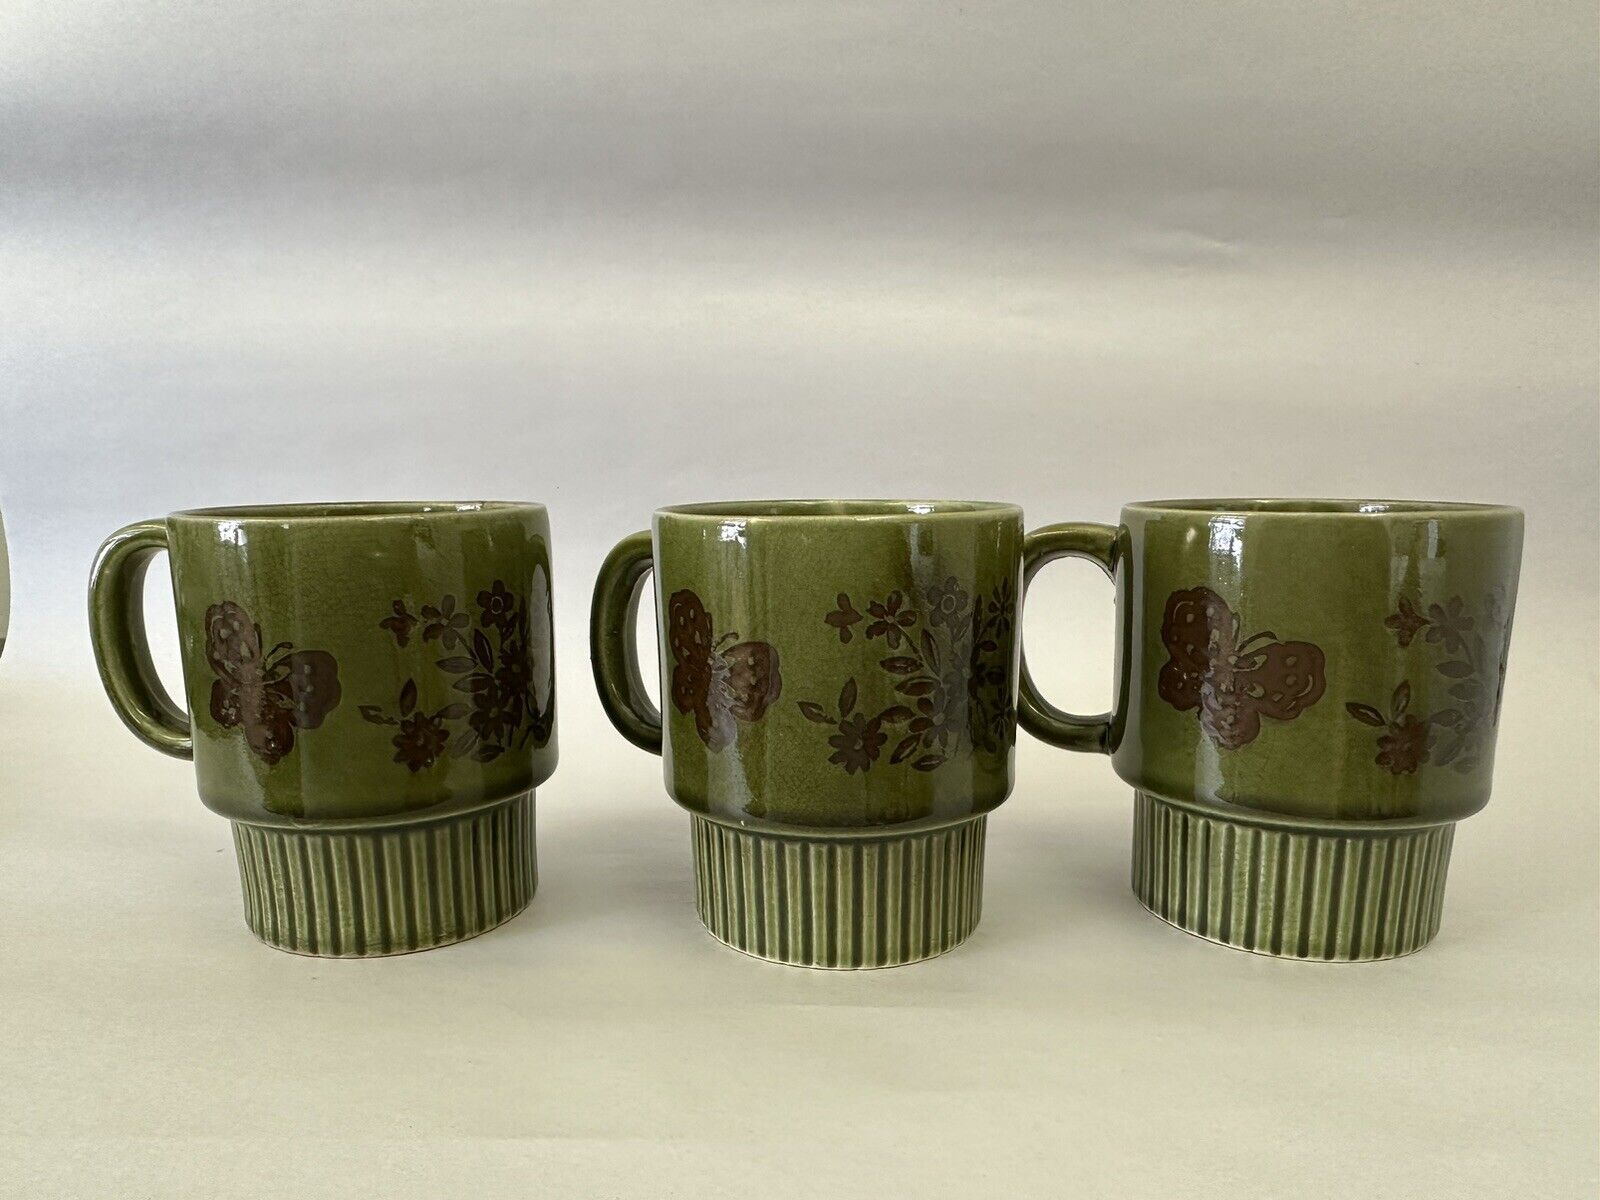 Vintage Japanese Stacking Mugs Set